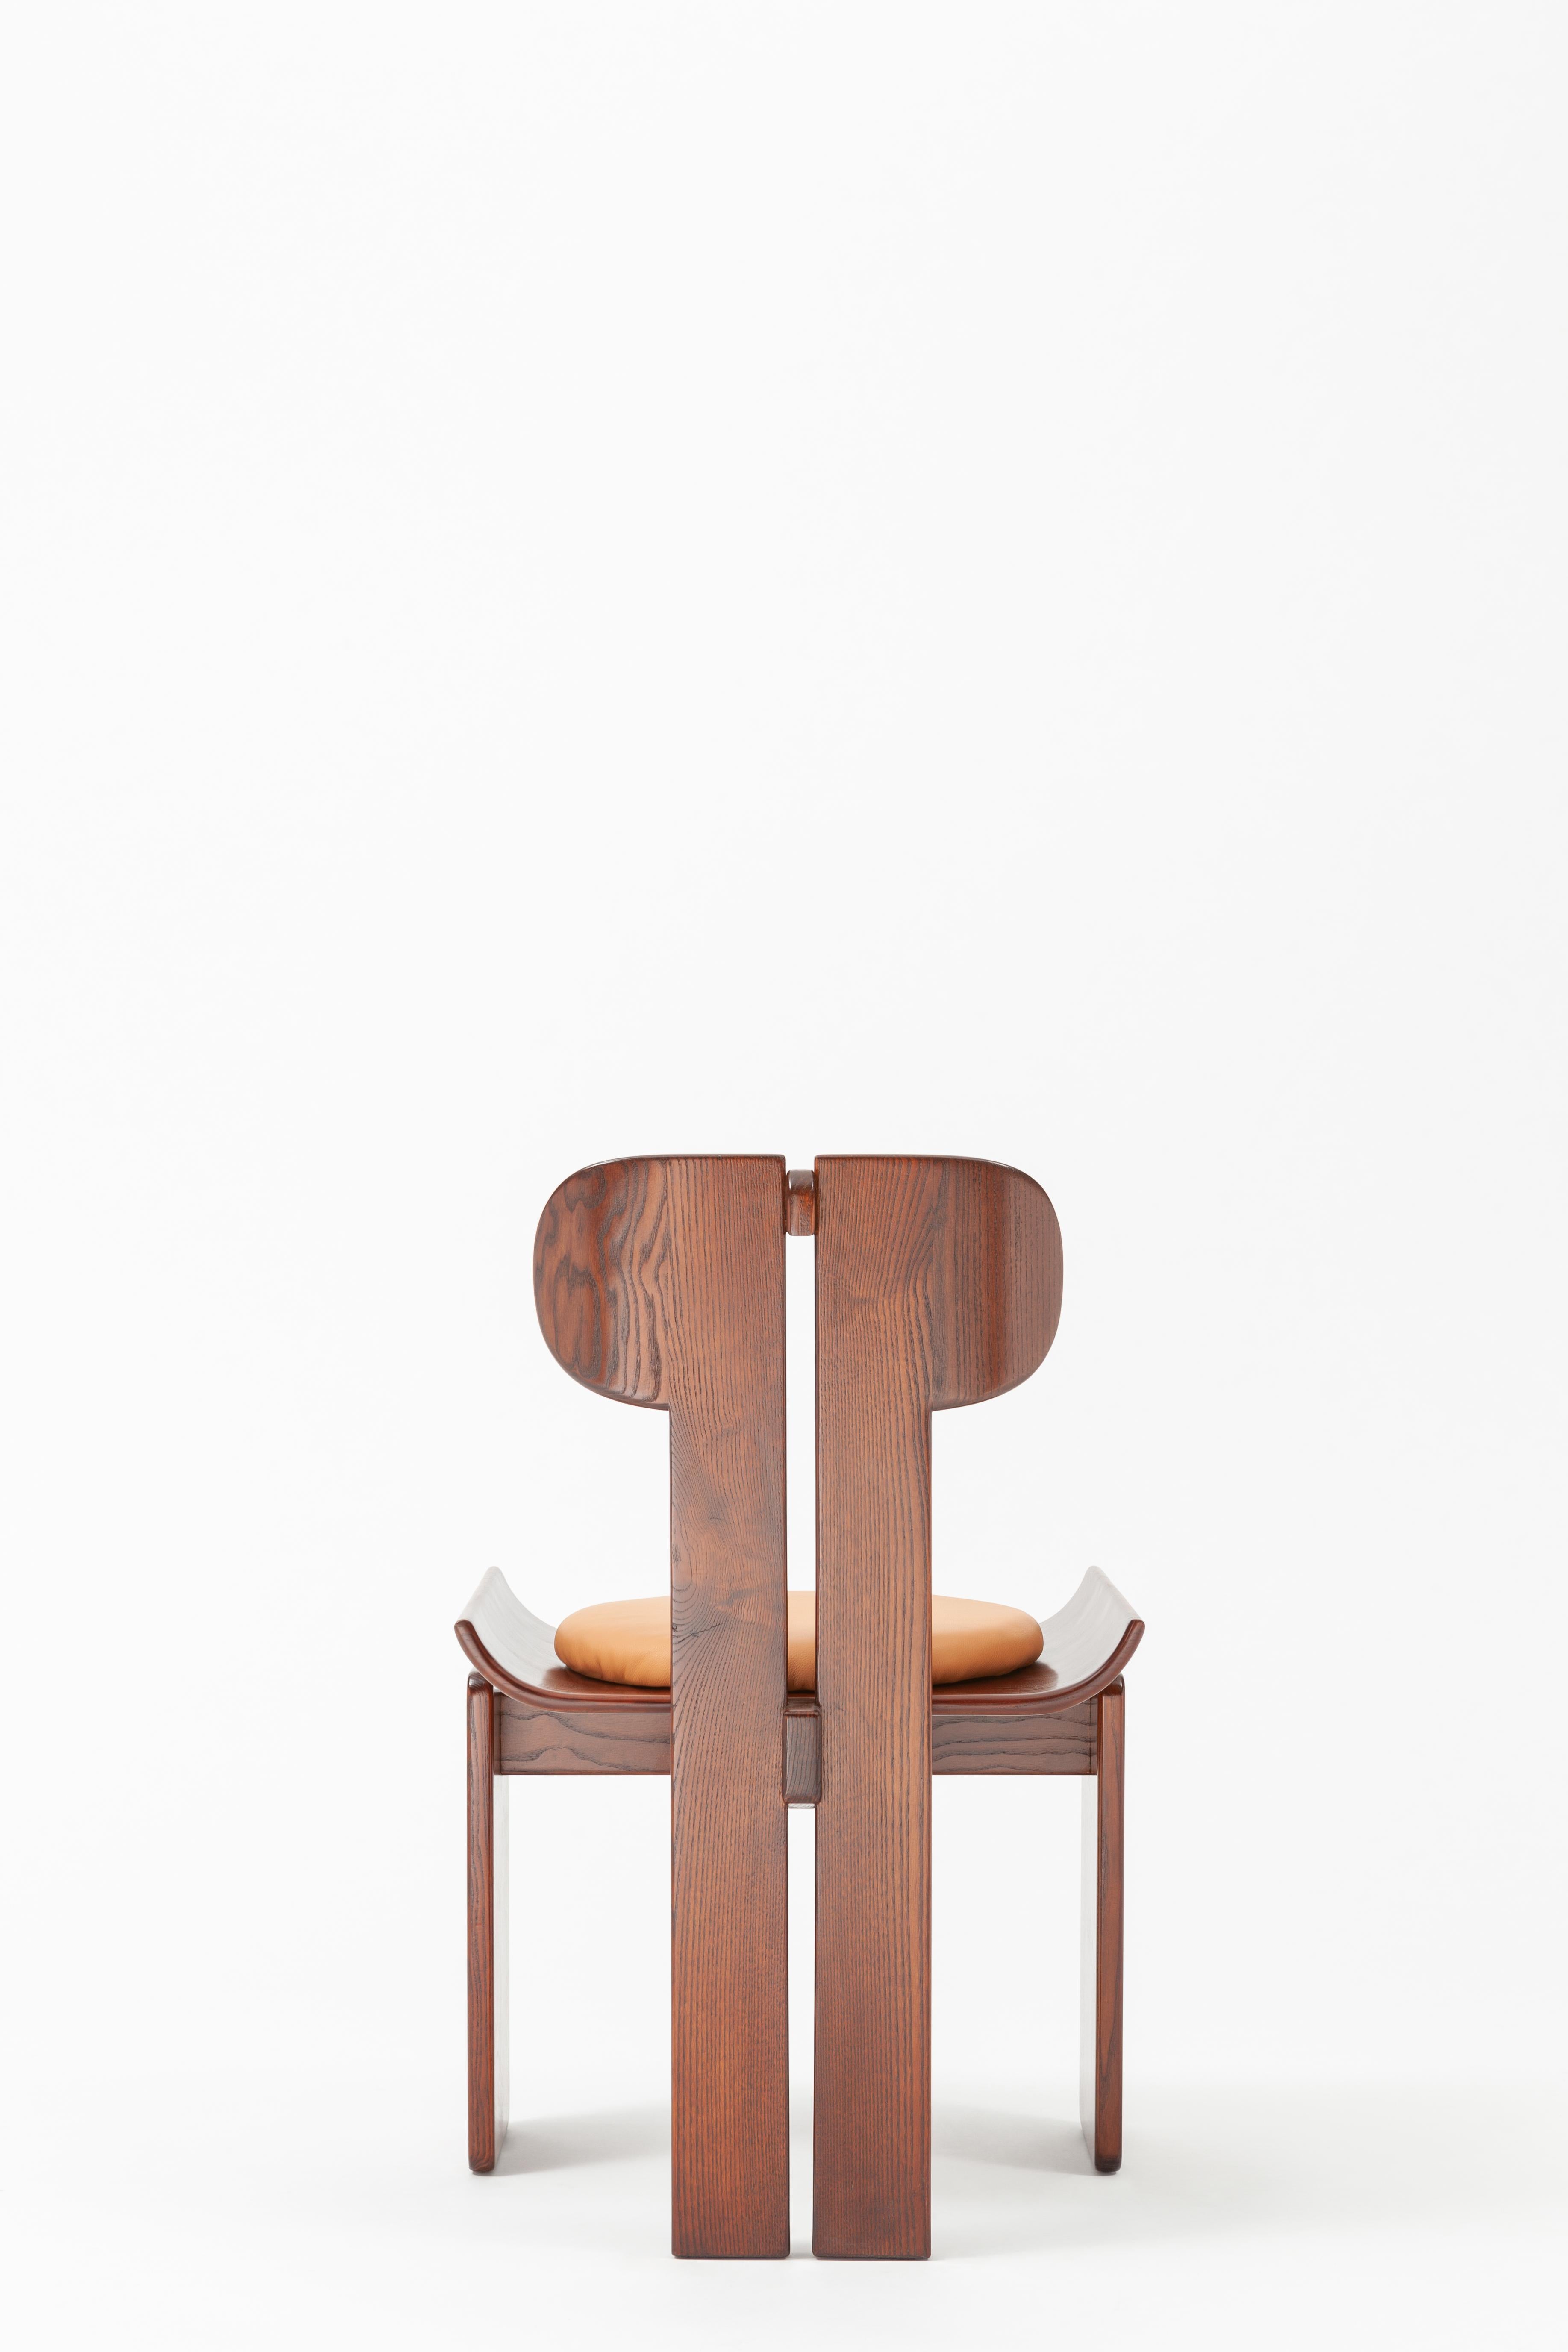 Chaise de salle à manger contemporaine de la collection Alea Paesaggio, conçue par Hanne Peer pour SEM. 
IDEA est une chaise très particulière, née d'une idée de déconstruction des éléments de base d'une chaise. En fait, elle désigne une structure